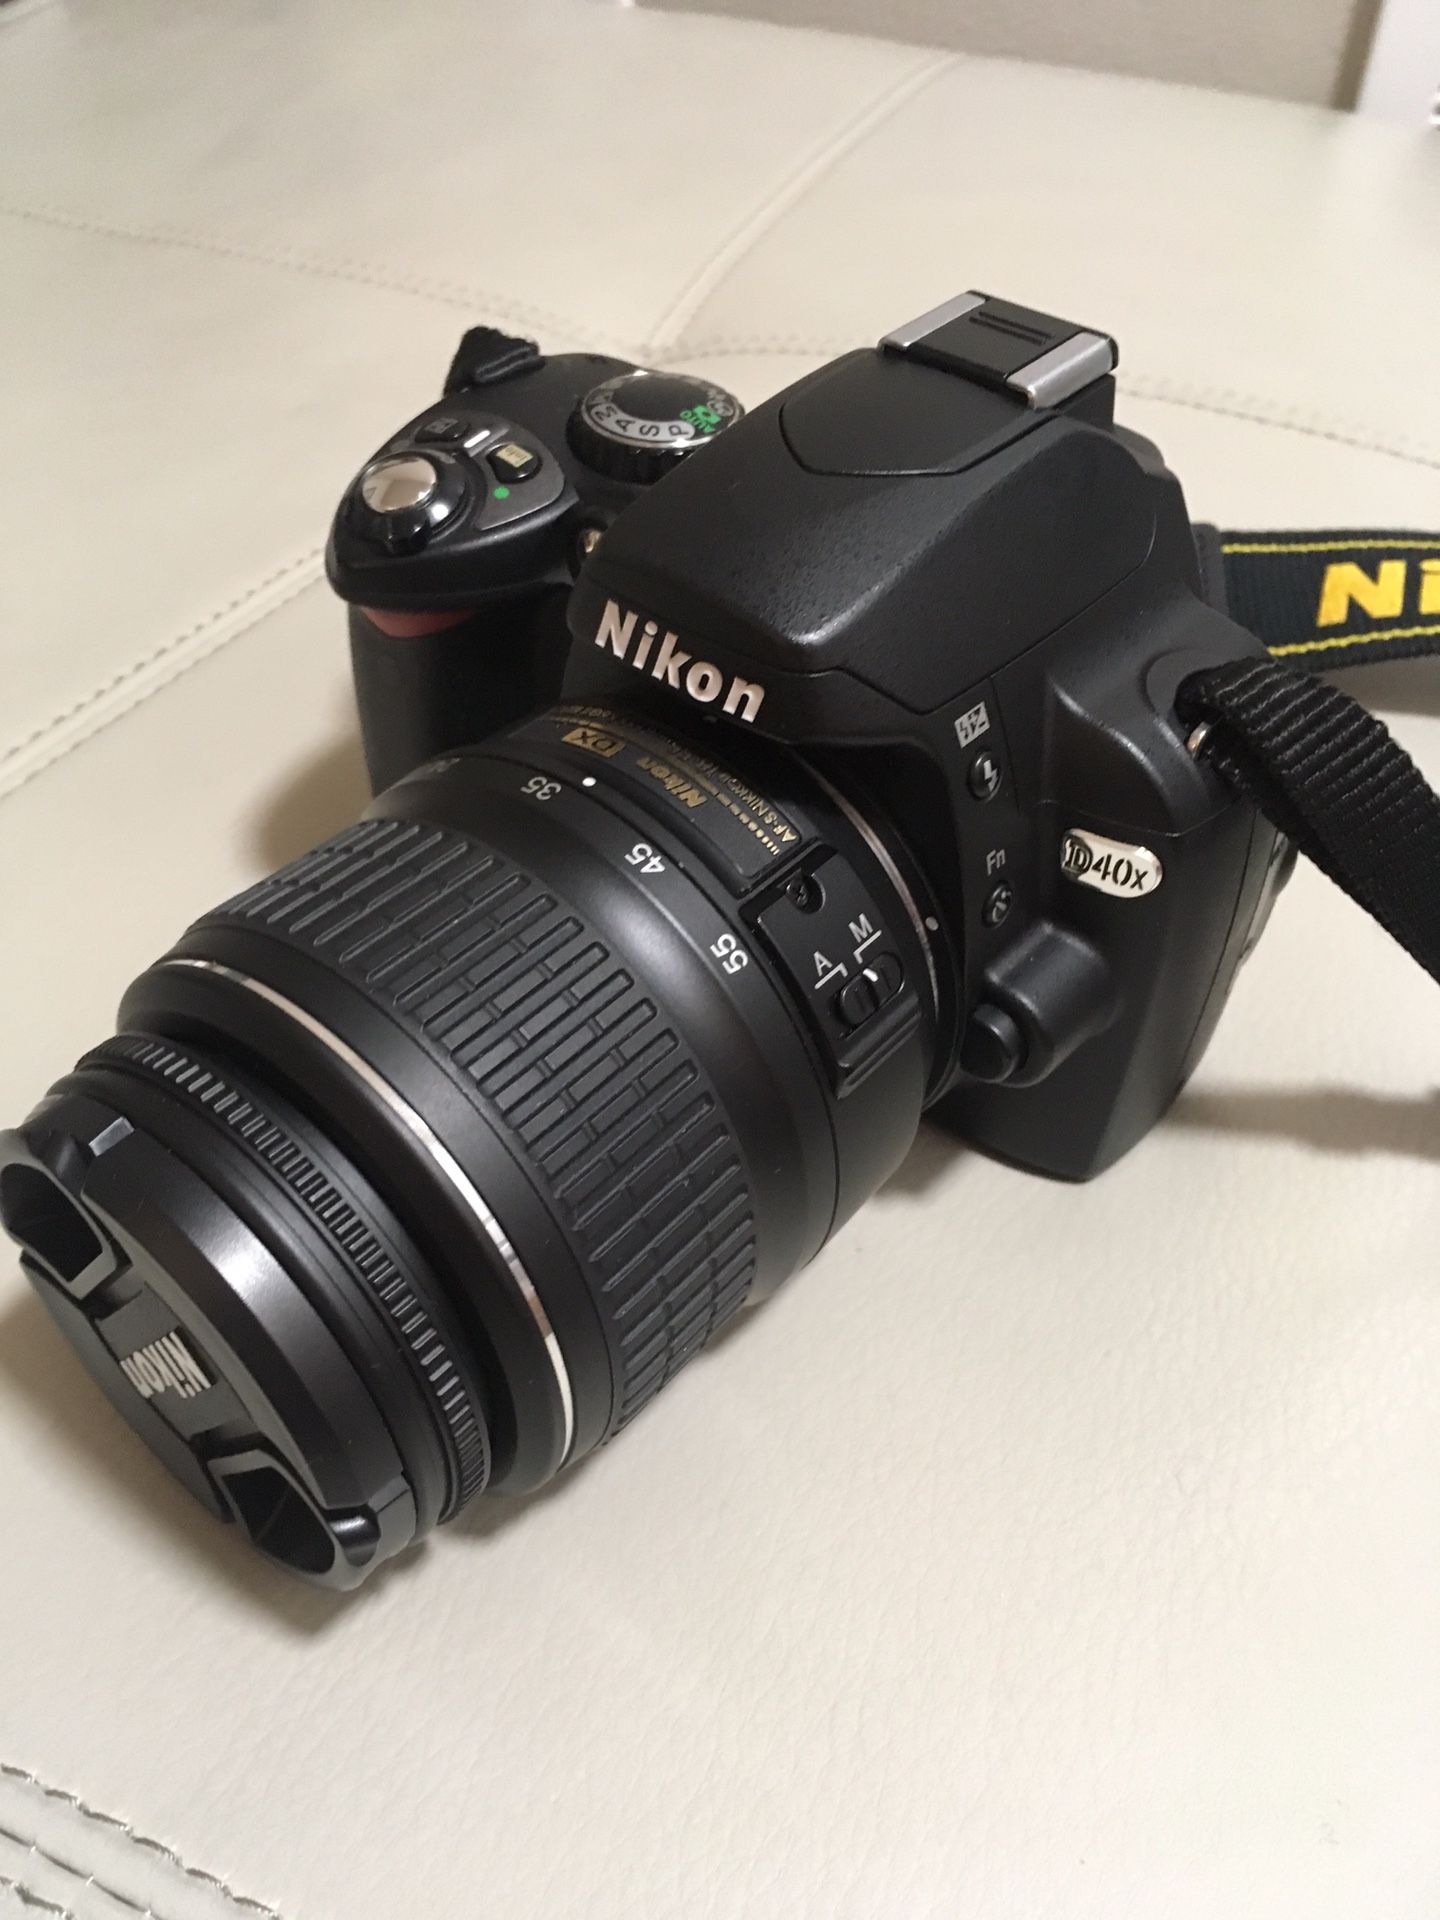 Nikon D40x camera